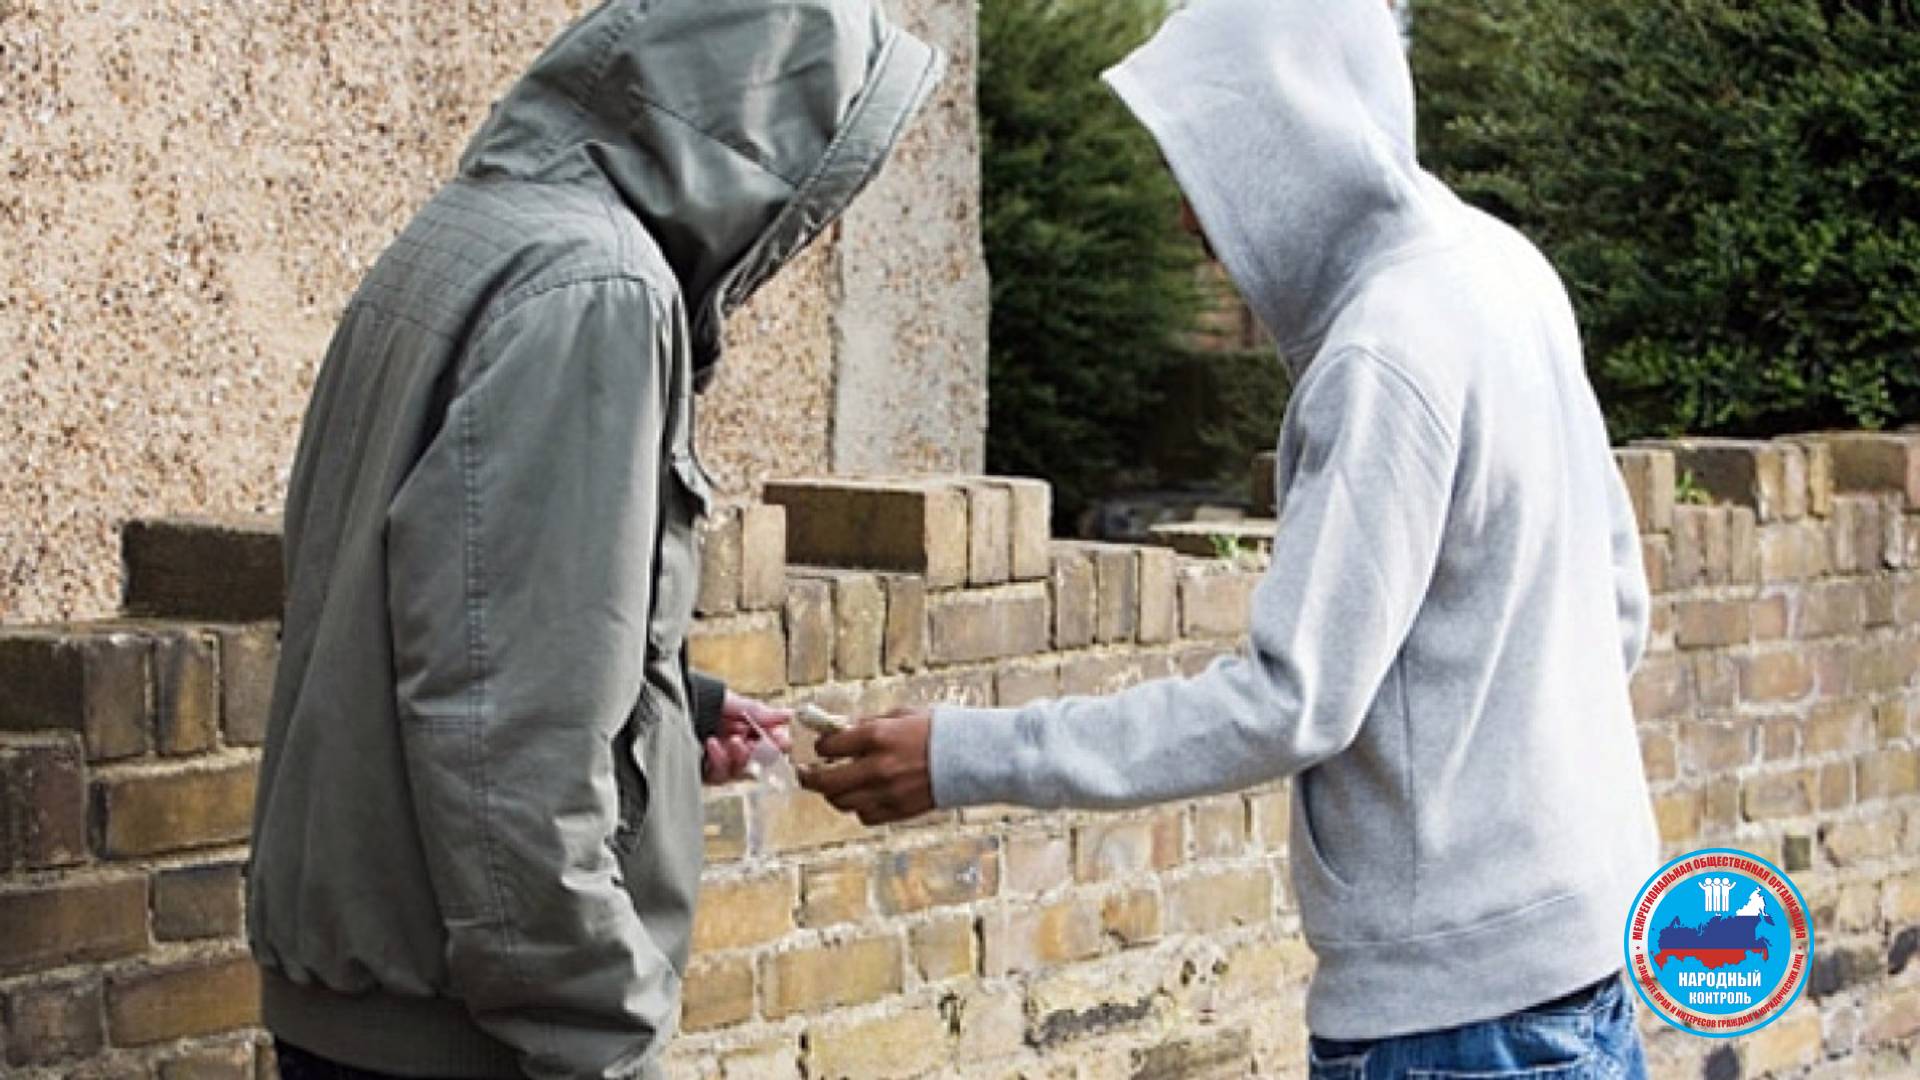 Распространение наркотиков в Коркино повышает смертность молодежи